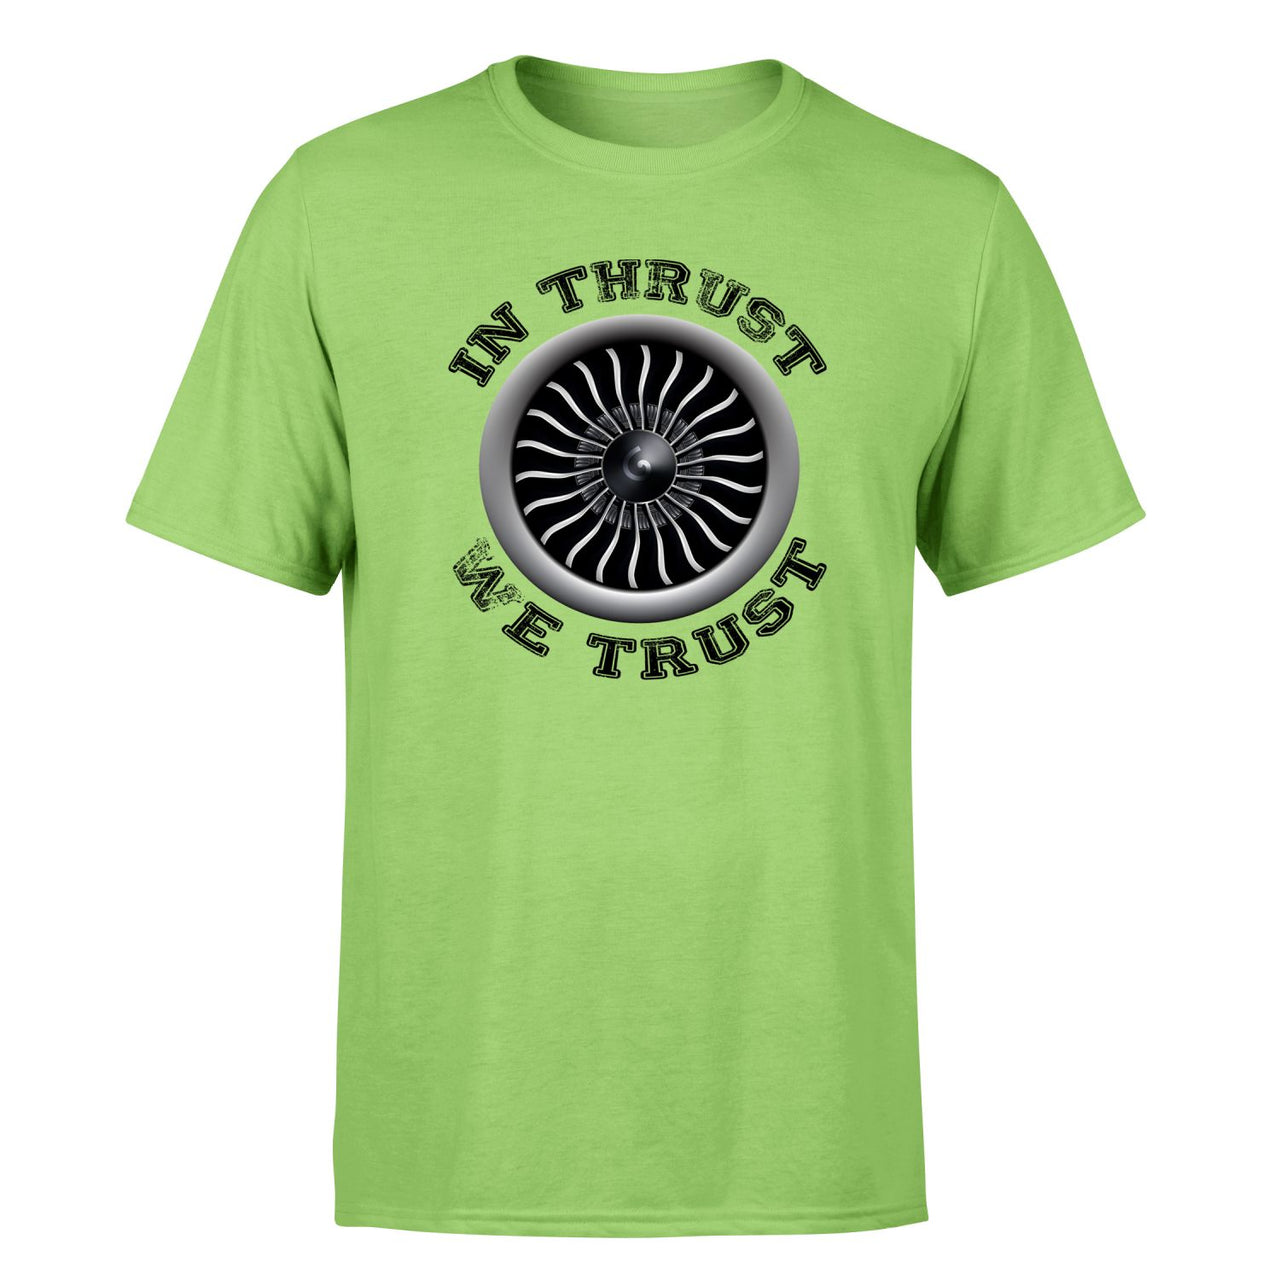 In Thrust We Trust (Vol 2) Designed T-Shirts